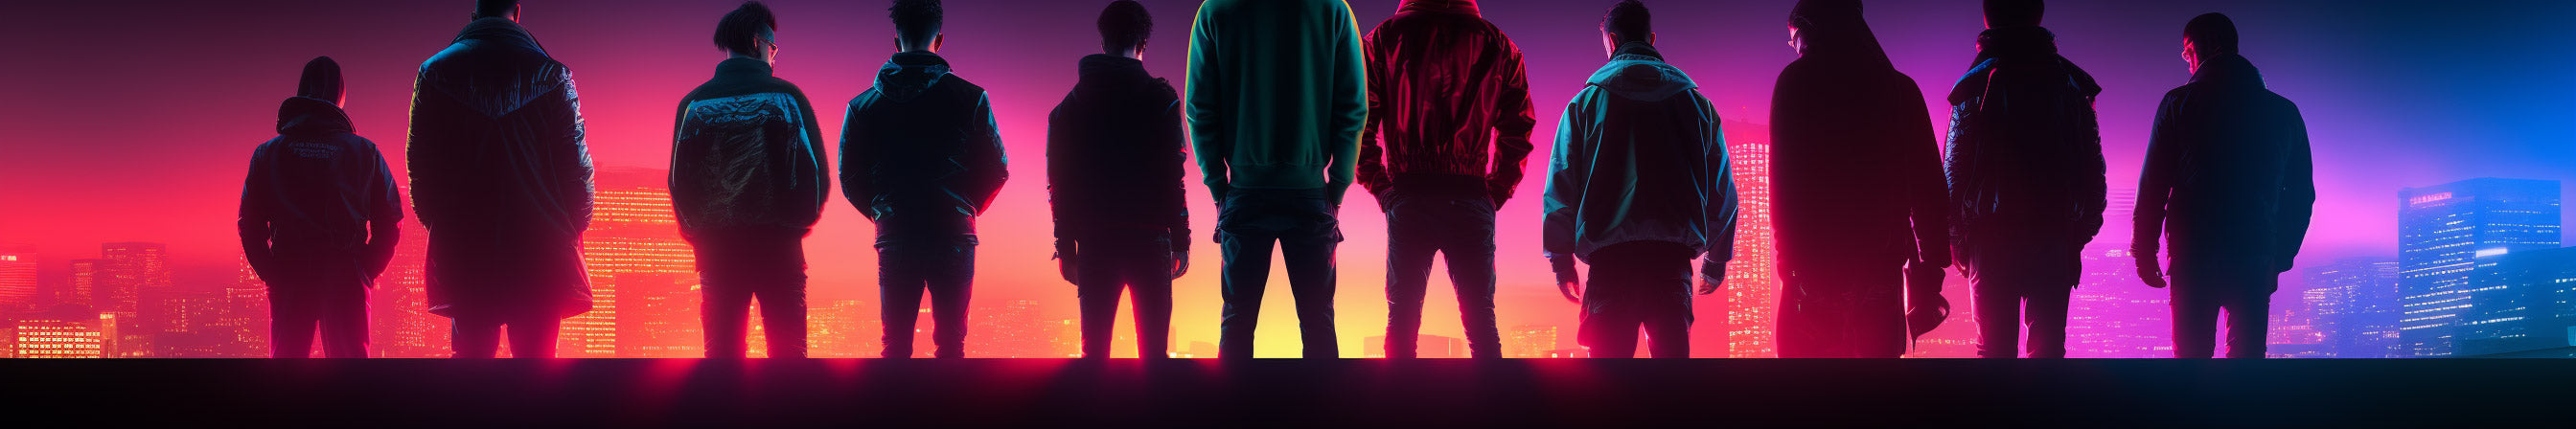 People in hoodies overlooking a neon sunrise